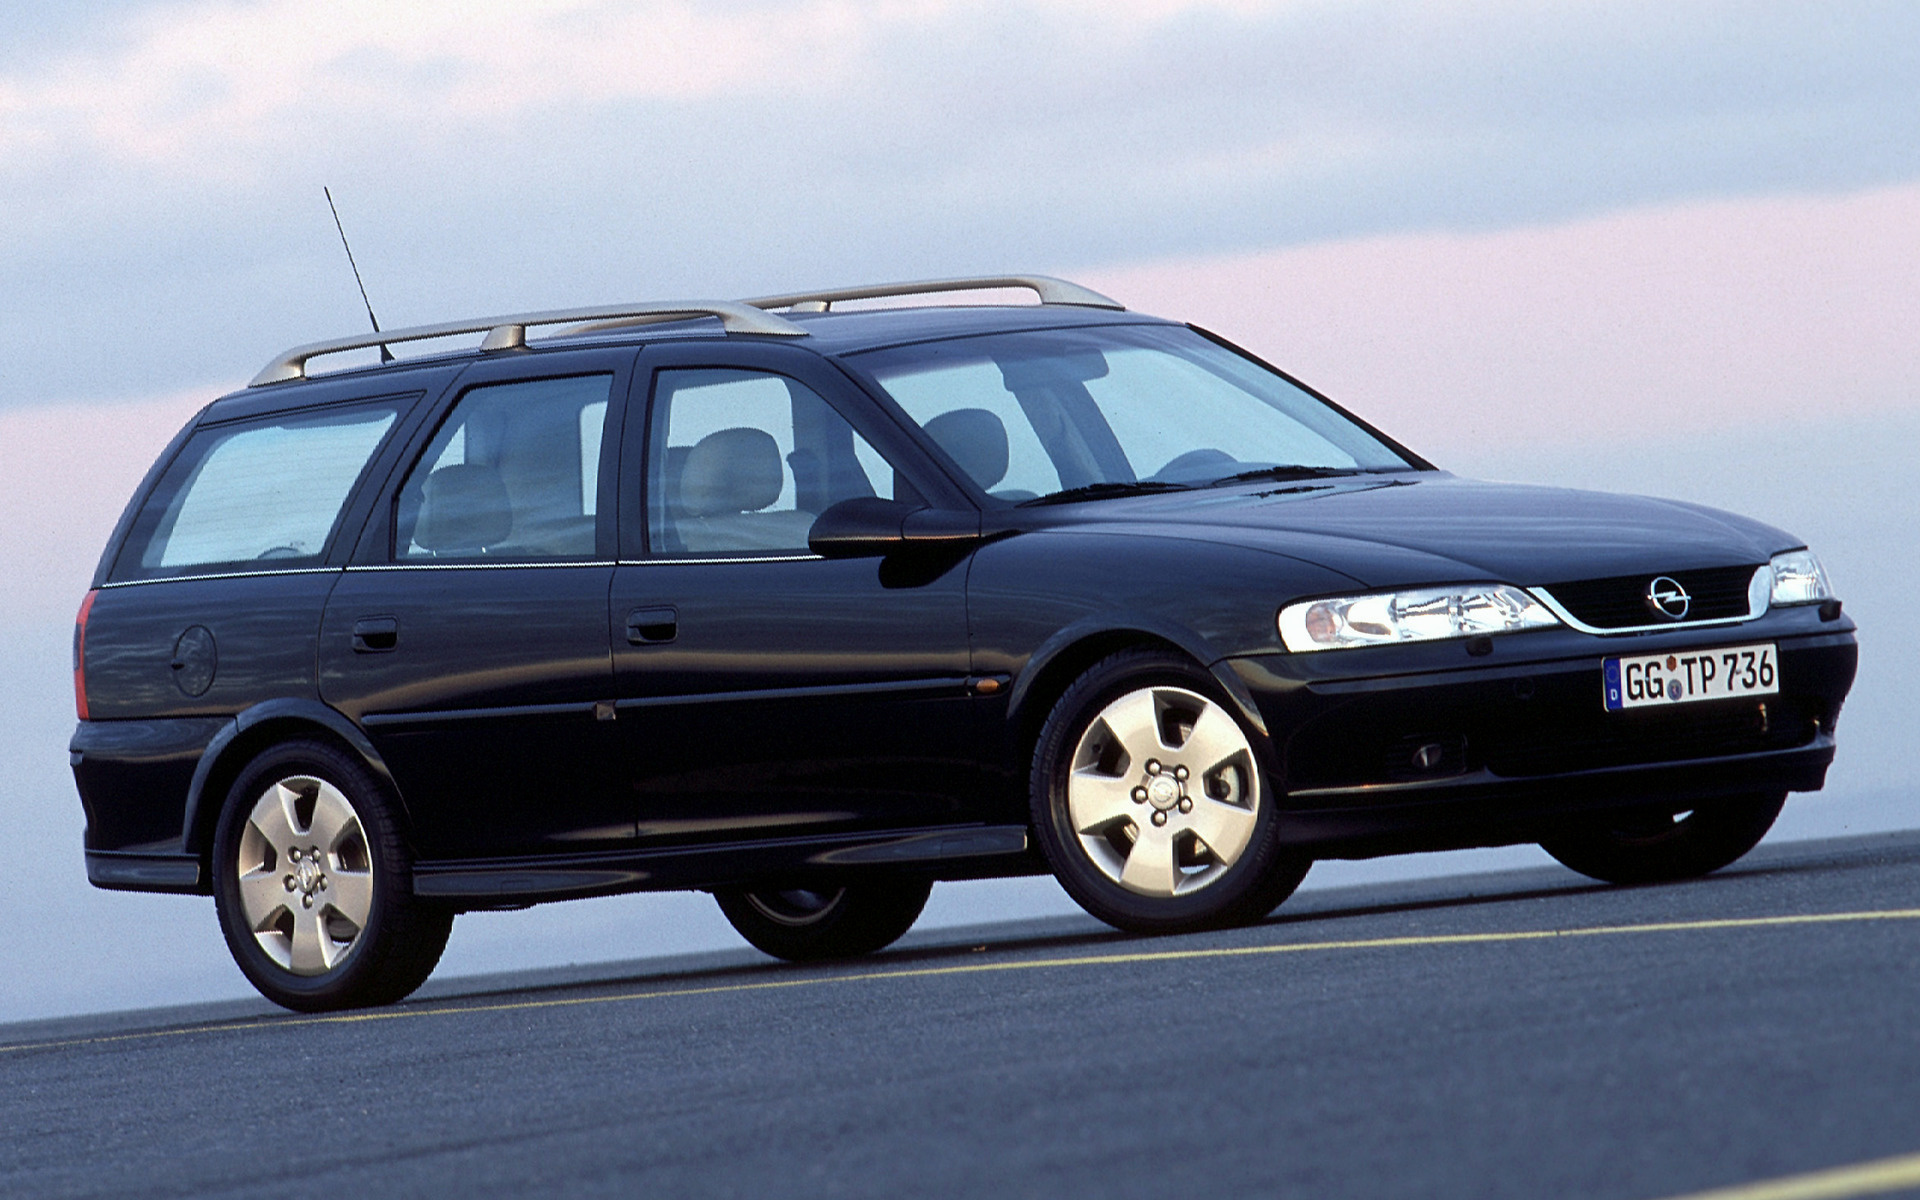 Вектра караван. Opel Vectra 2000 универсал. Opel Vectra b 2001 универсал. Opel Vectra b 1998 универсал. Opel Vectra b универсал 2002.